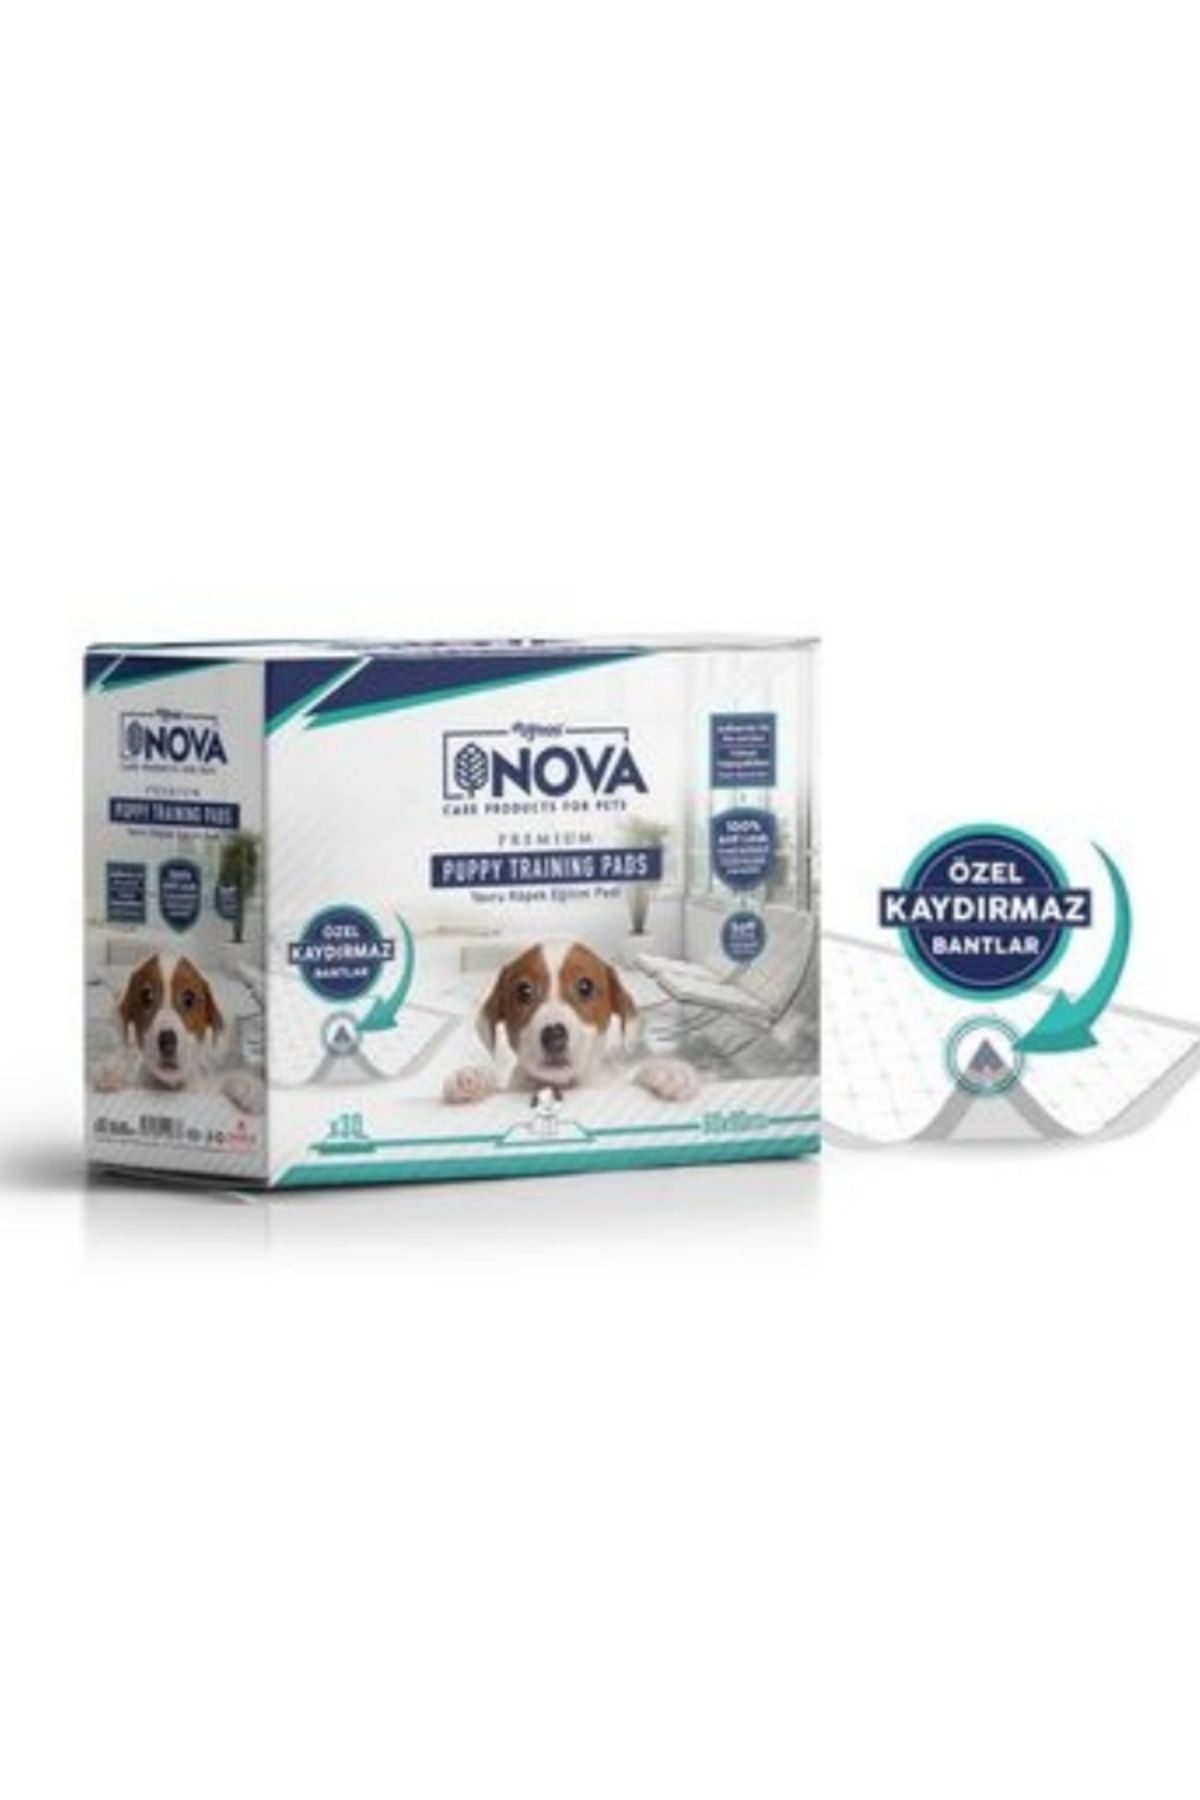 Nova mydog 60x90 çiş pedi 30'lu fırsat paketi